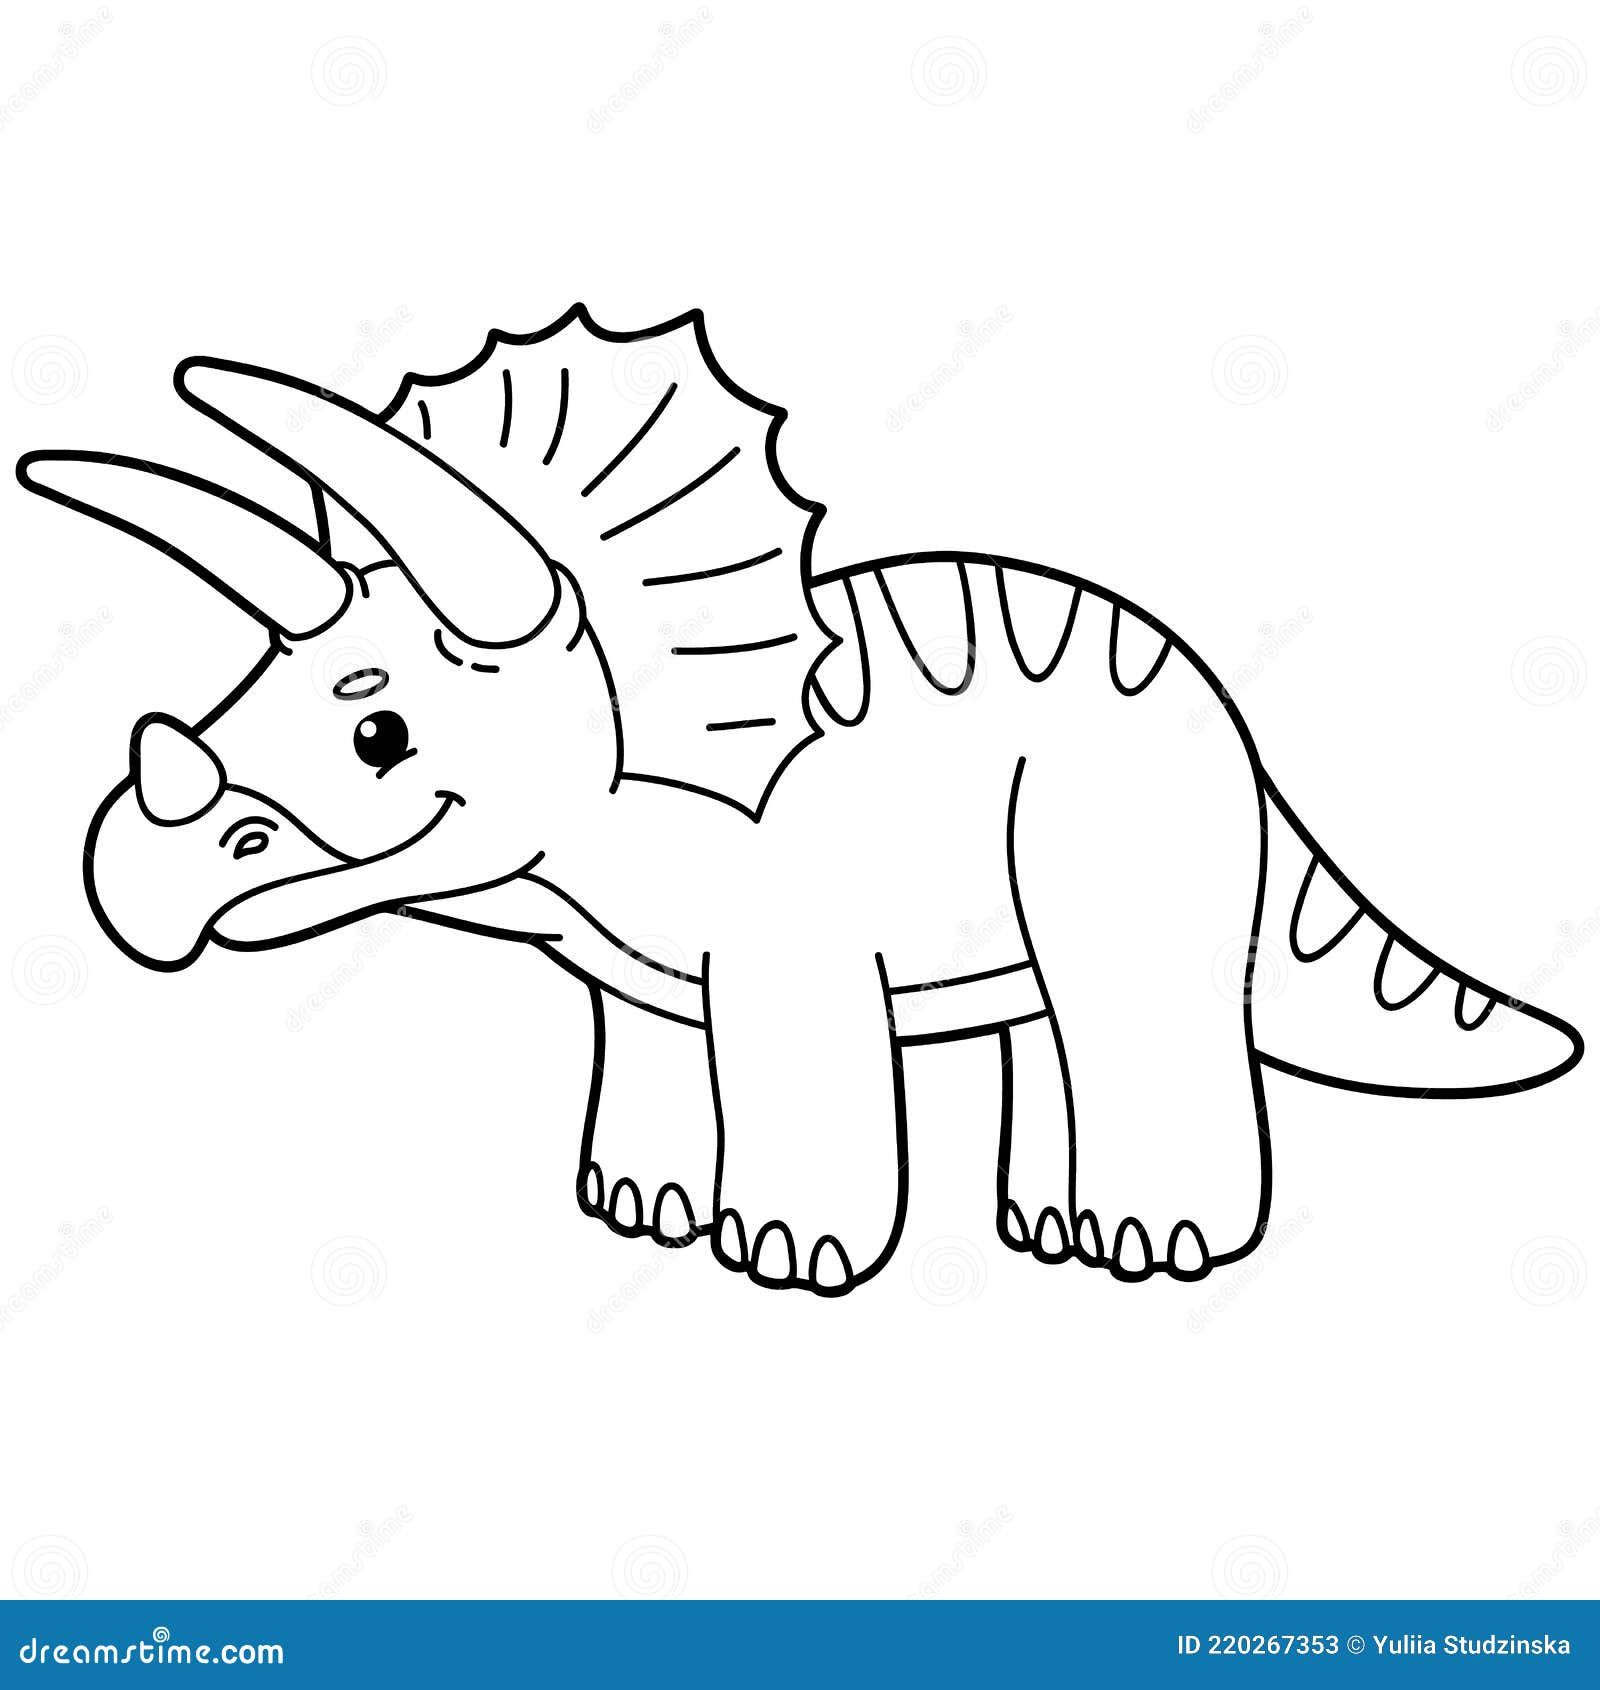 Desenhos de Dinossauros para colorir Triceratops, etc  Dibujo de  dinosaurio, Libro de dinosaurios para colorear, Páginas para colorear lindas